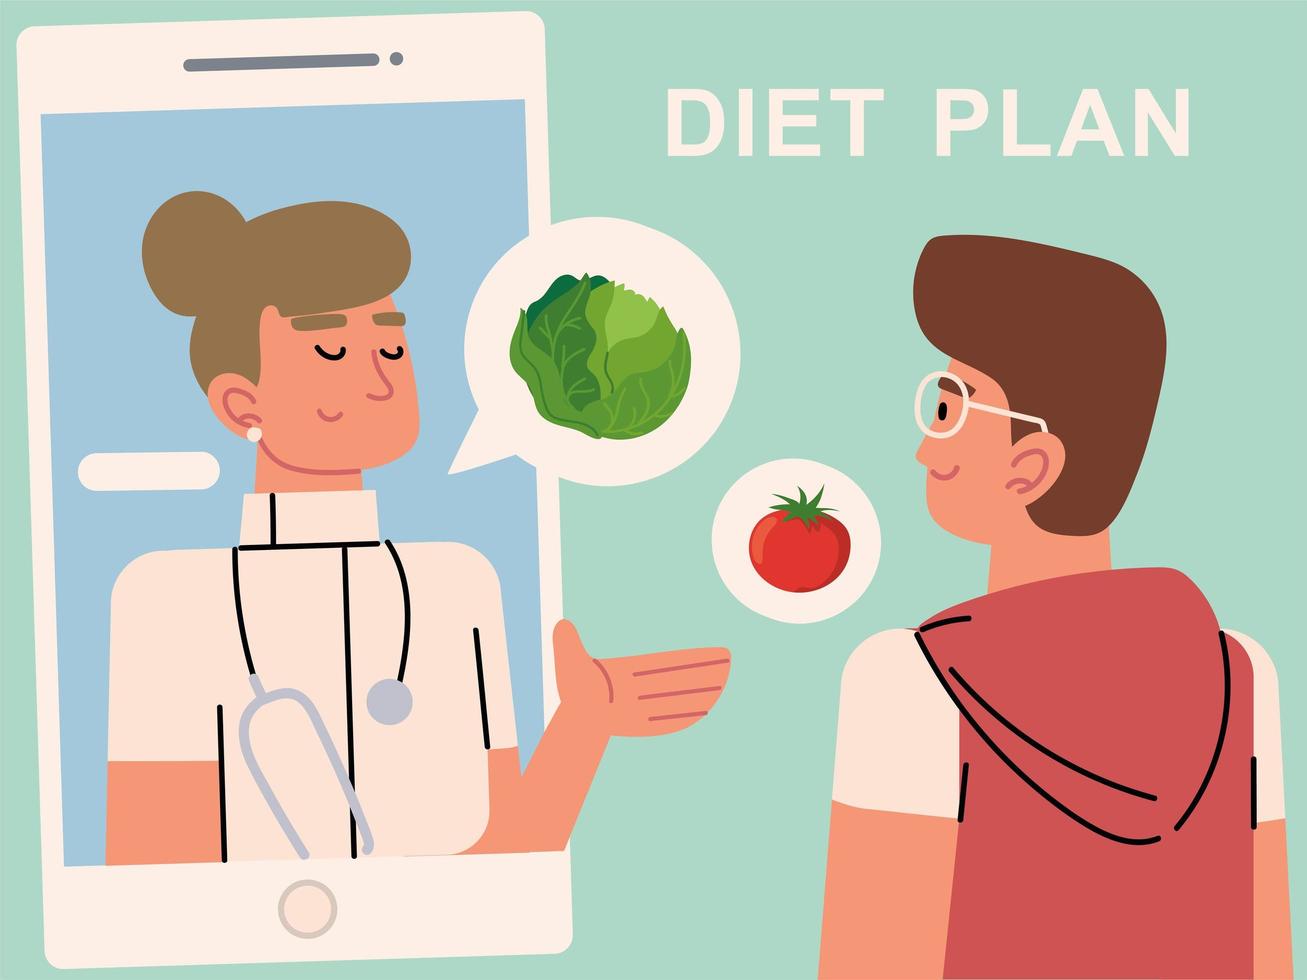 online diet plan vector